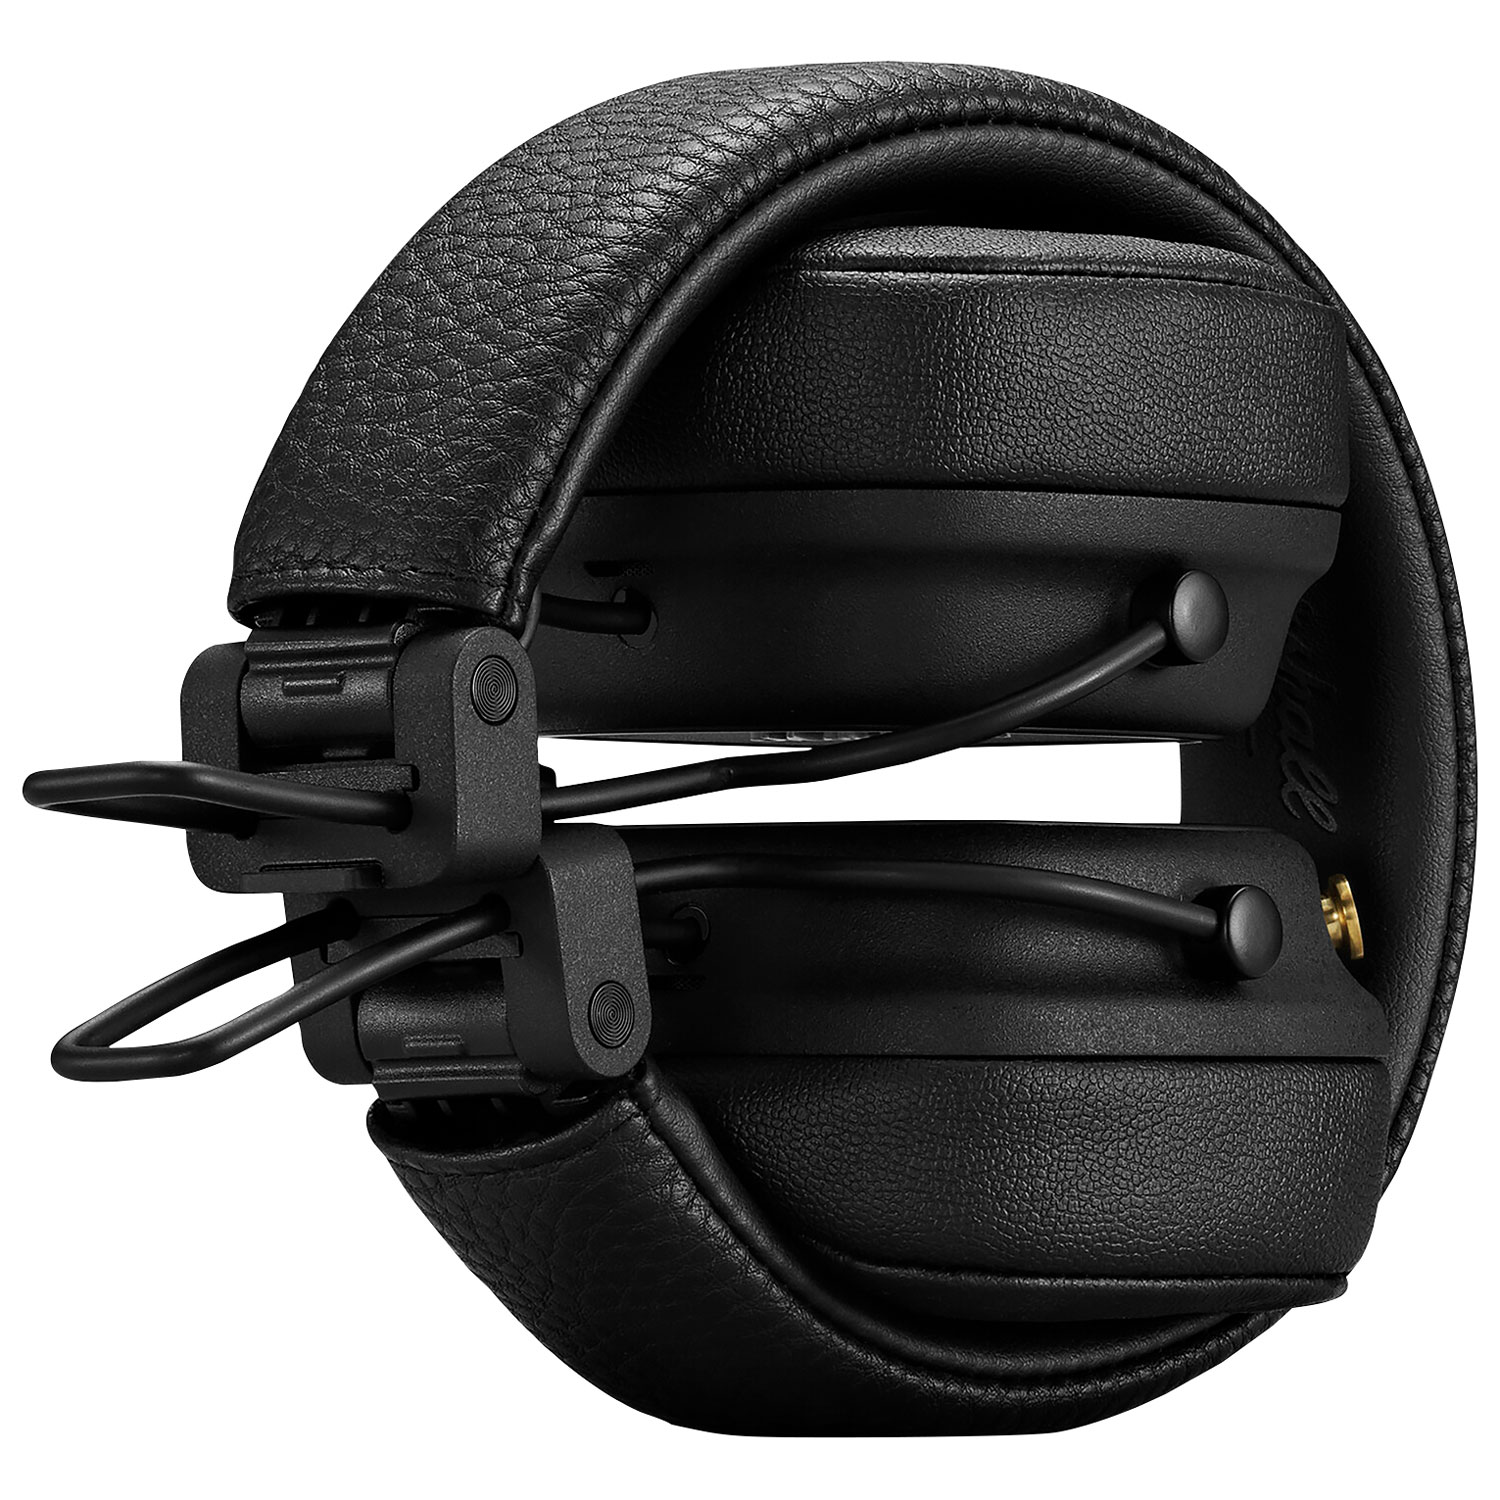 Marshall Major IV On-Ear Bluetooth Headphones - Black | Best Buy 